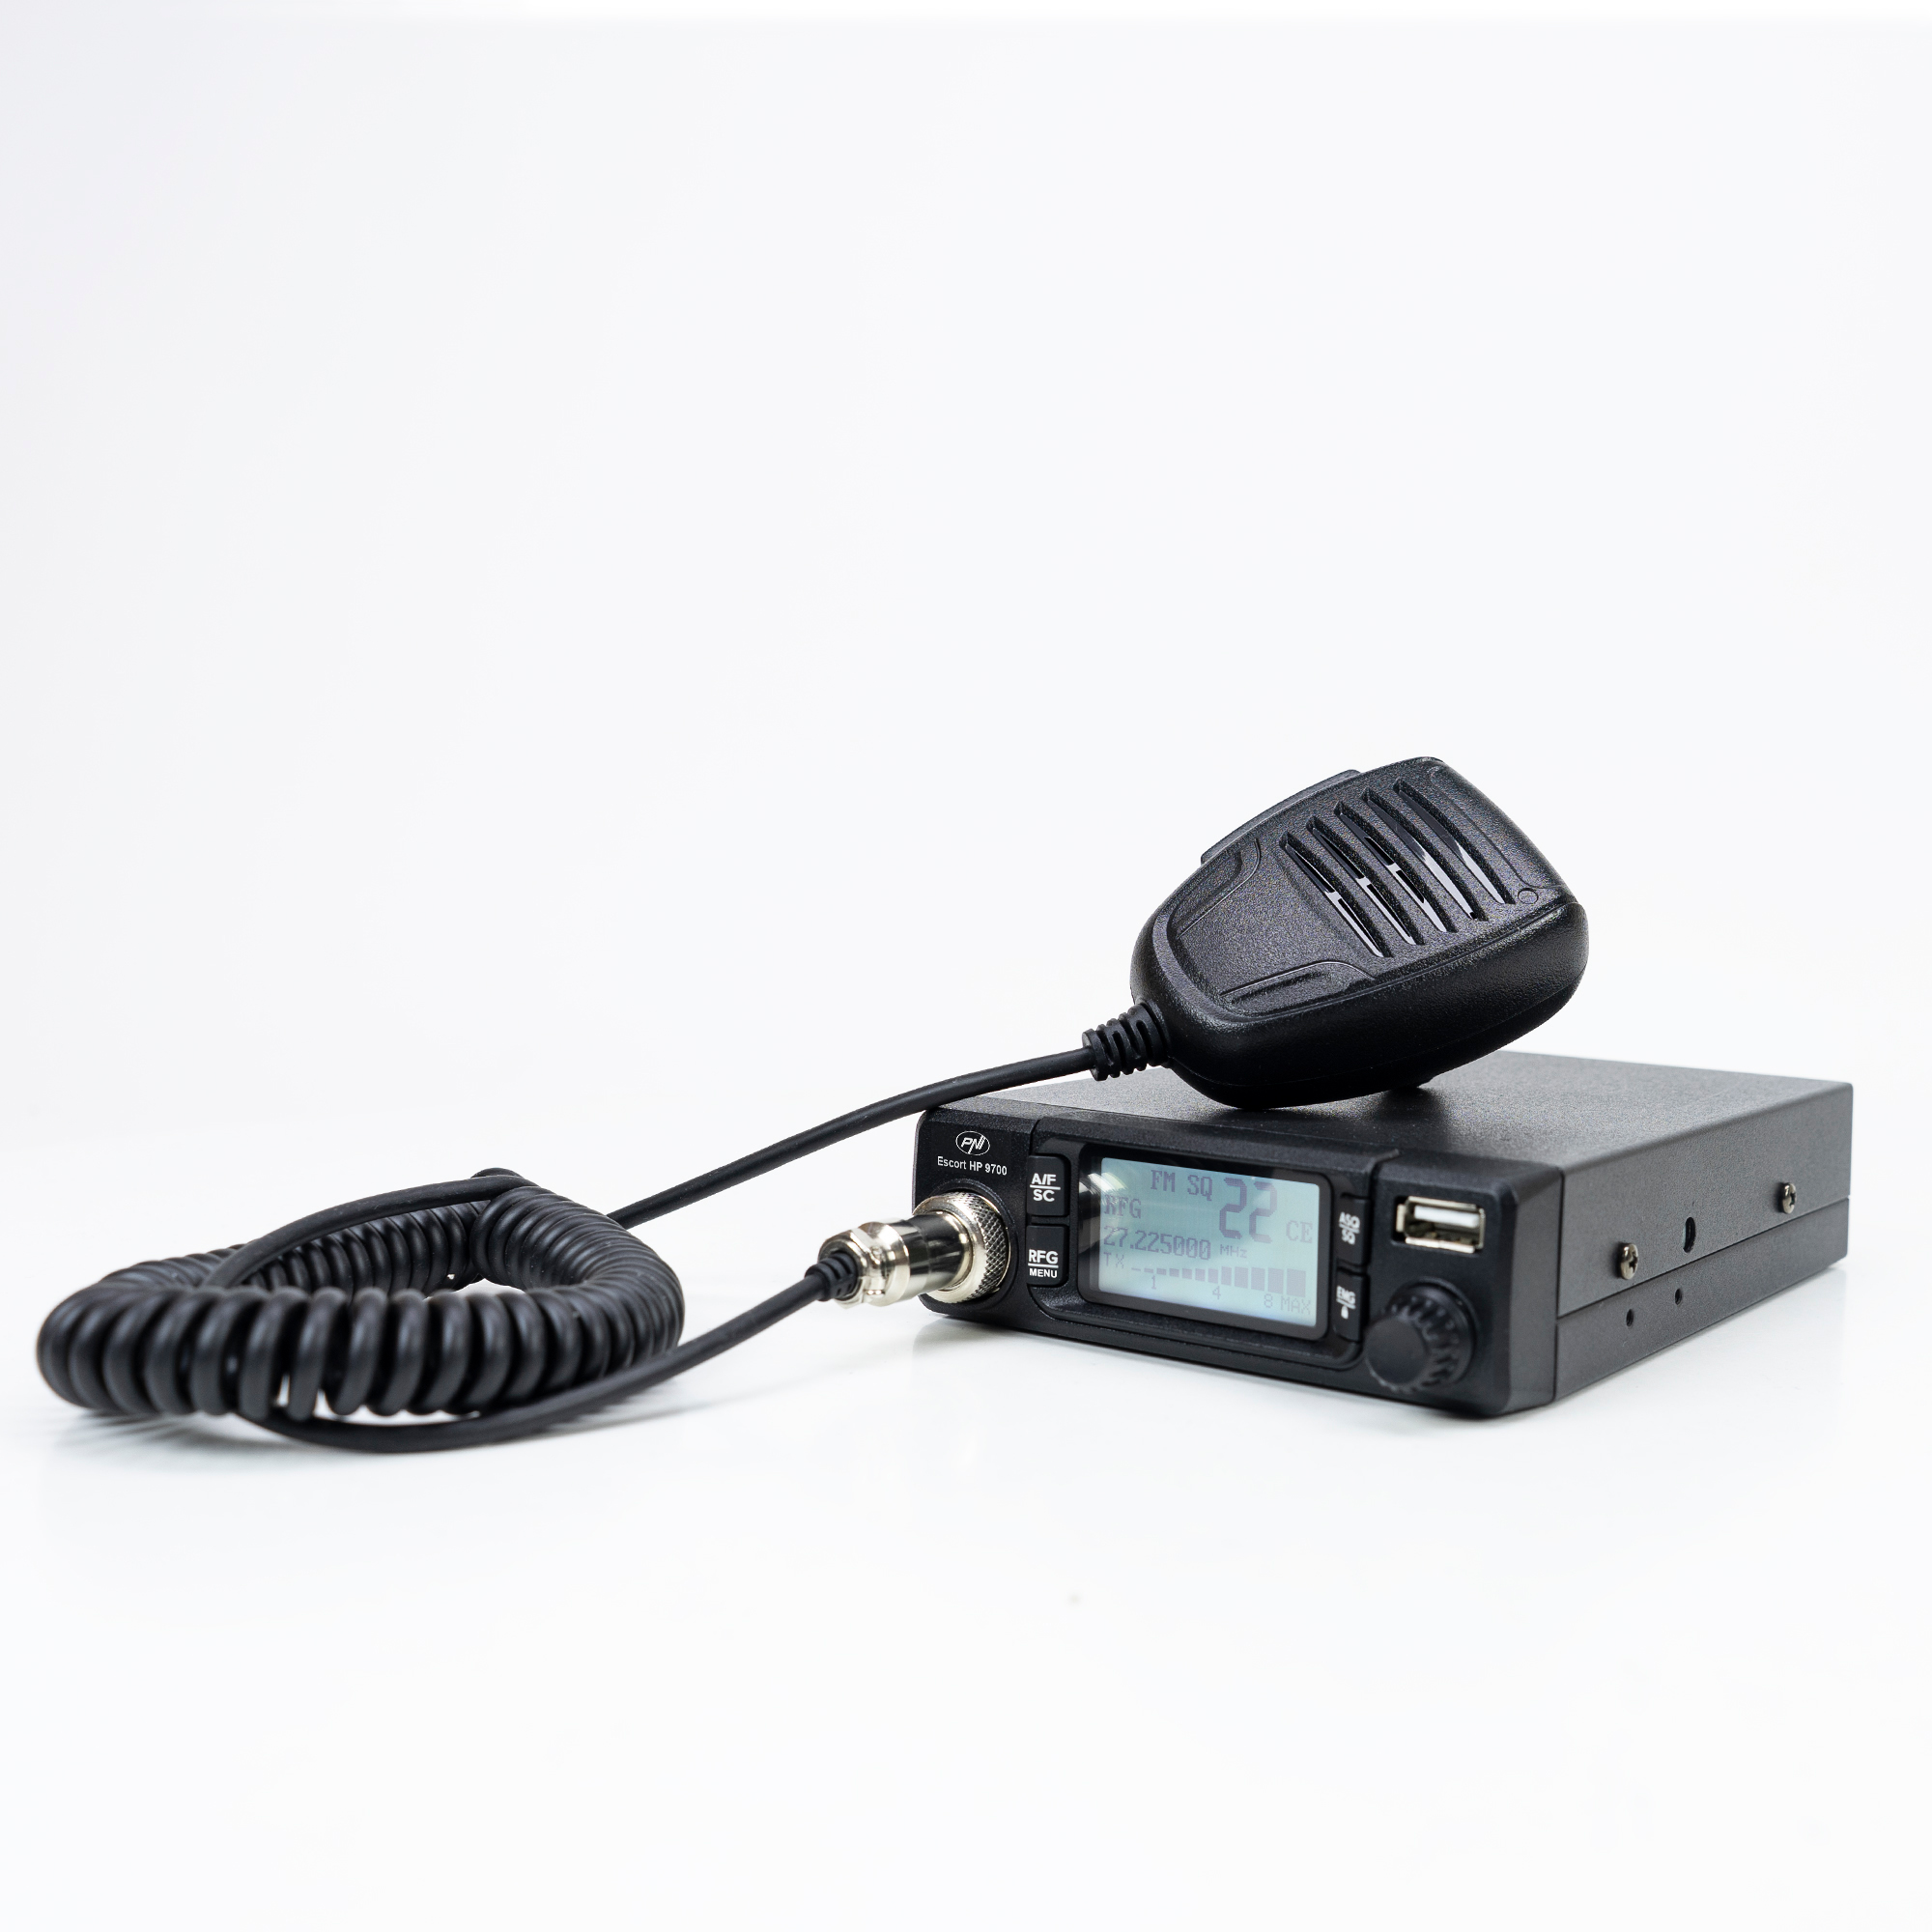 Statie radio CB PNI Escort HP 9700 USB, ANC, ASQ, alimentare 12V / 24V, mufa de bricheta inclusa image5